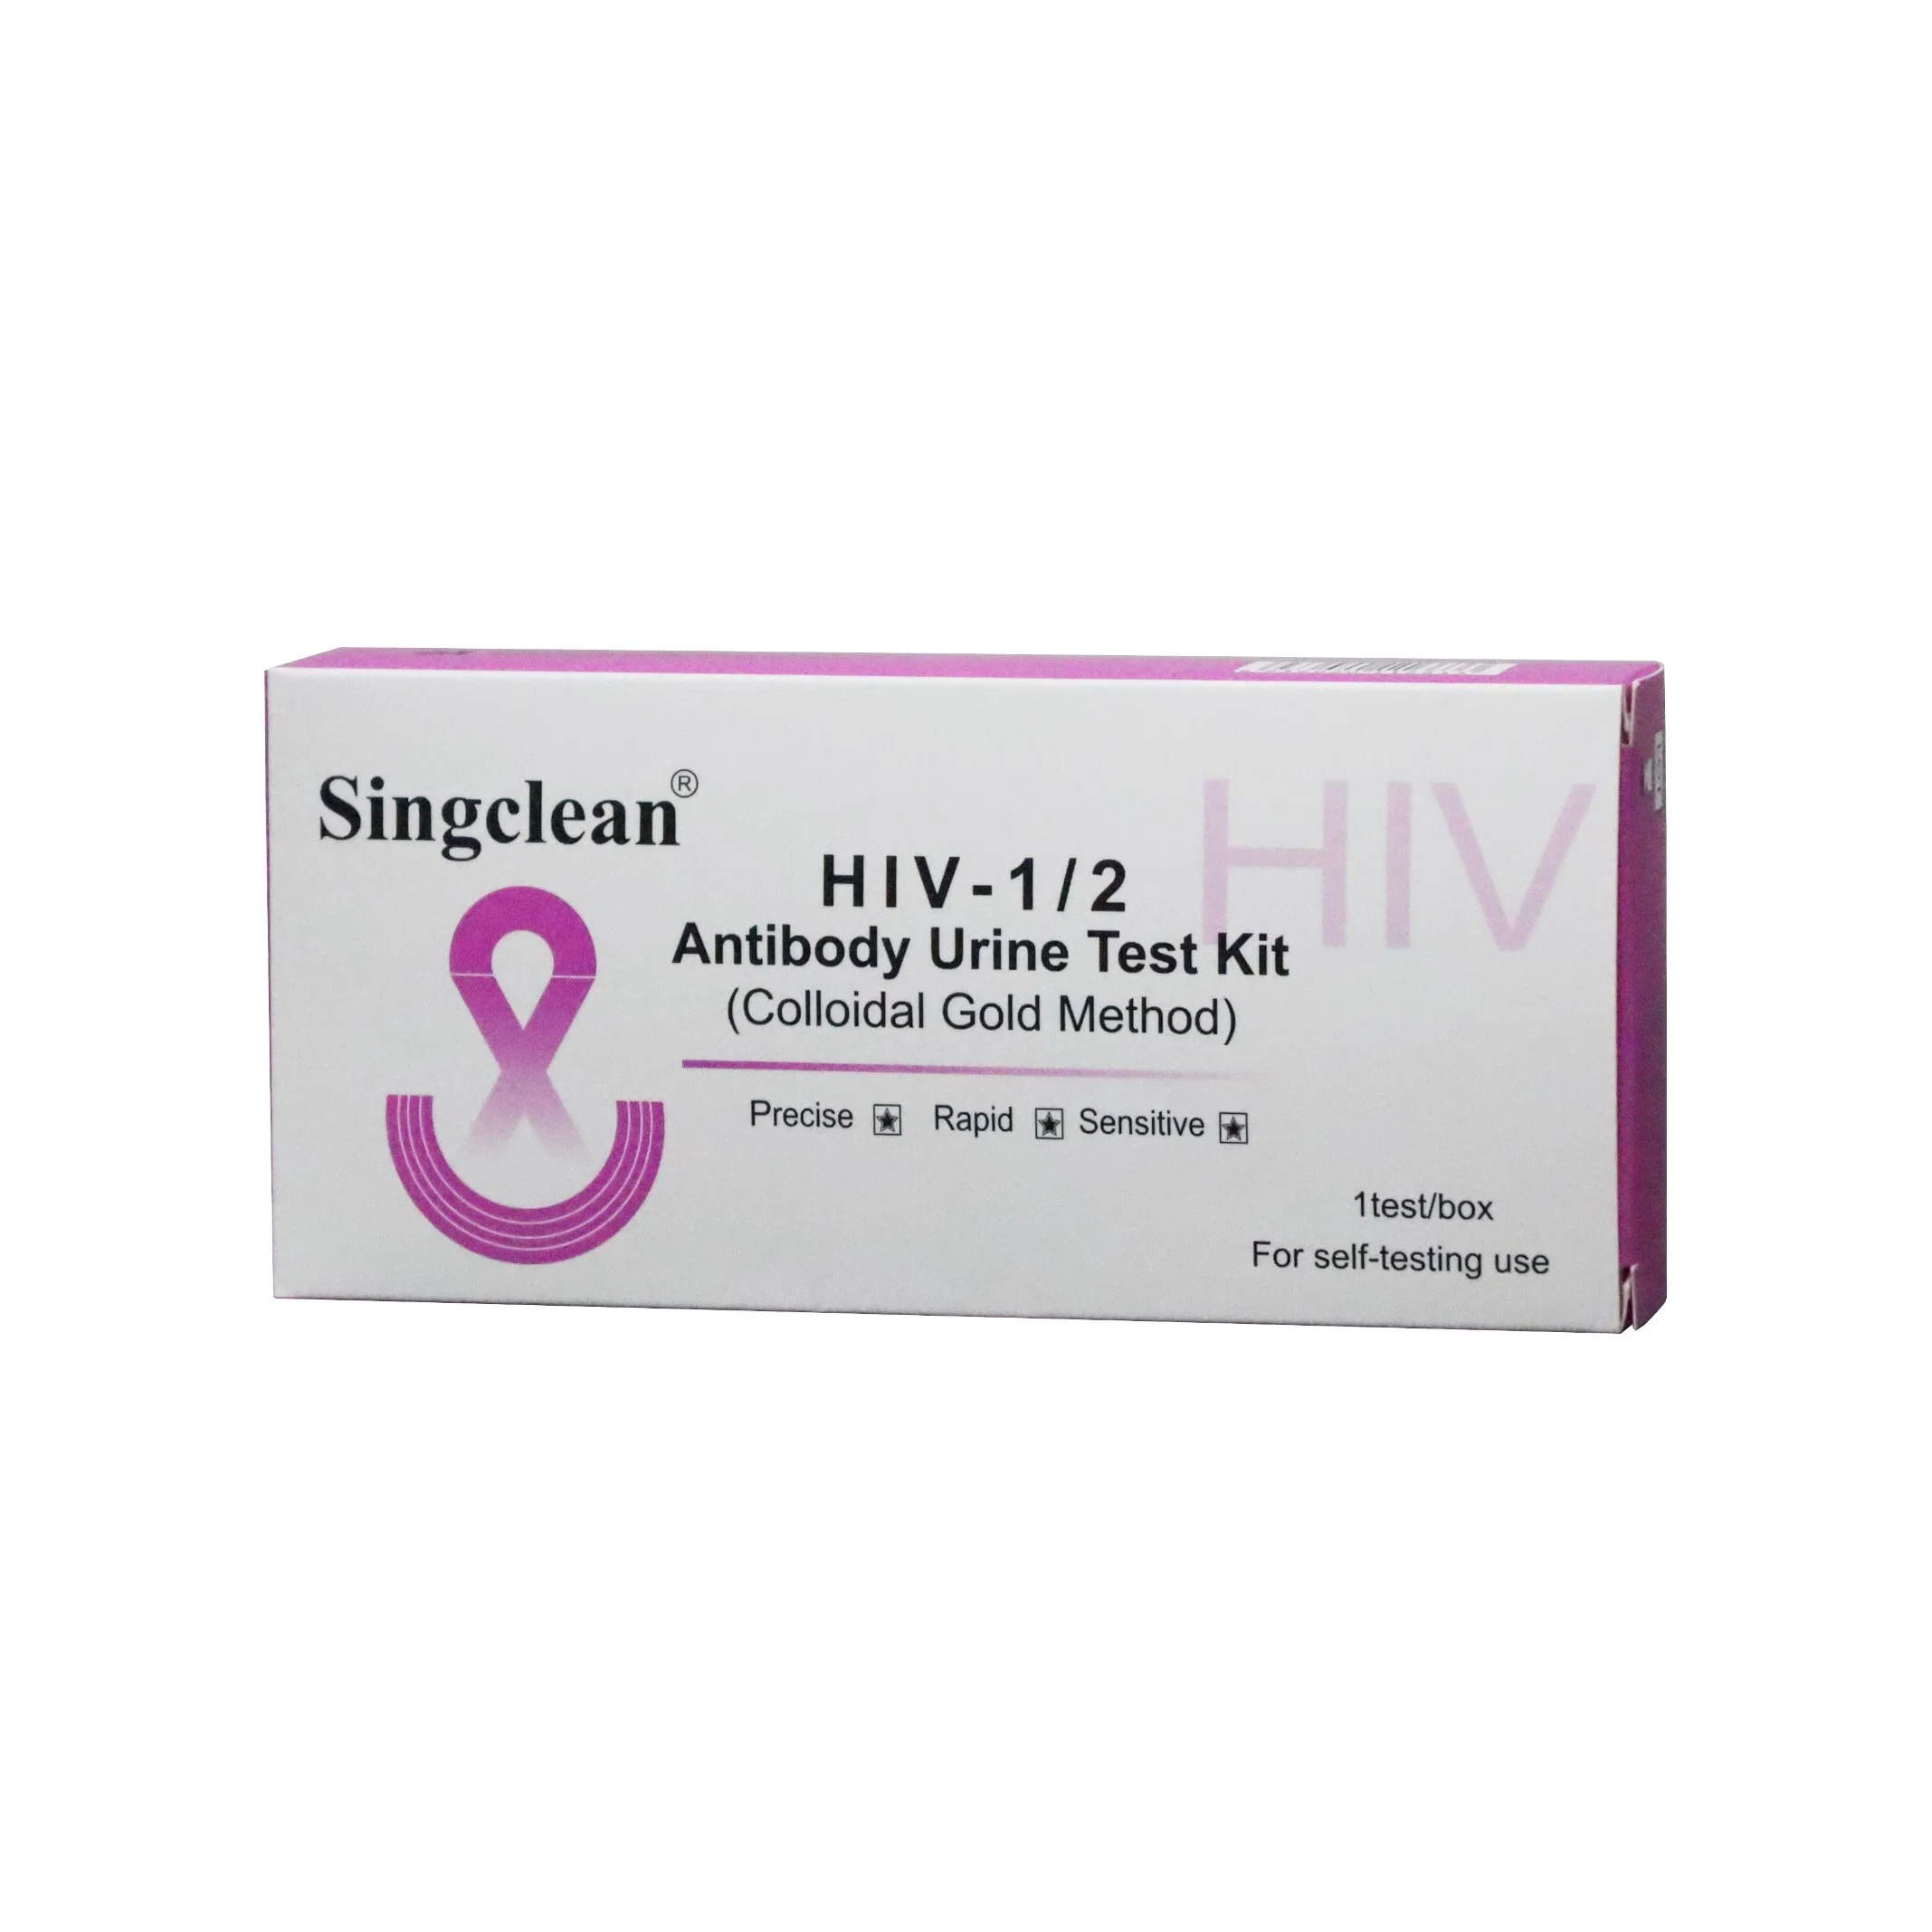 Singclean Quick Rapid One Step orina de laboratorio recoger el VIH 1/2 Dispositivo de prueba de anticuerpos de orina para el síndrome de inmunodeficiencia adquirida